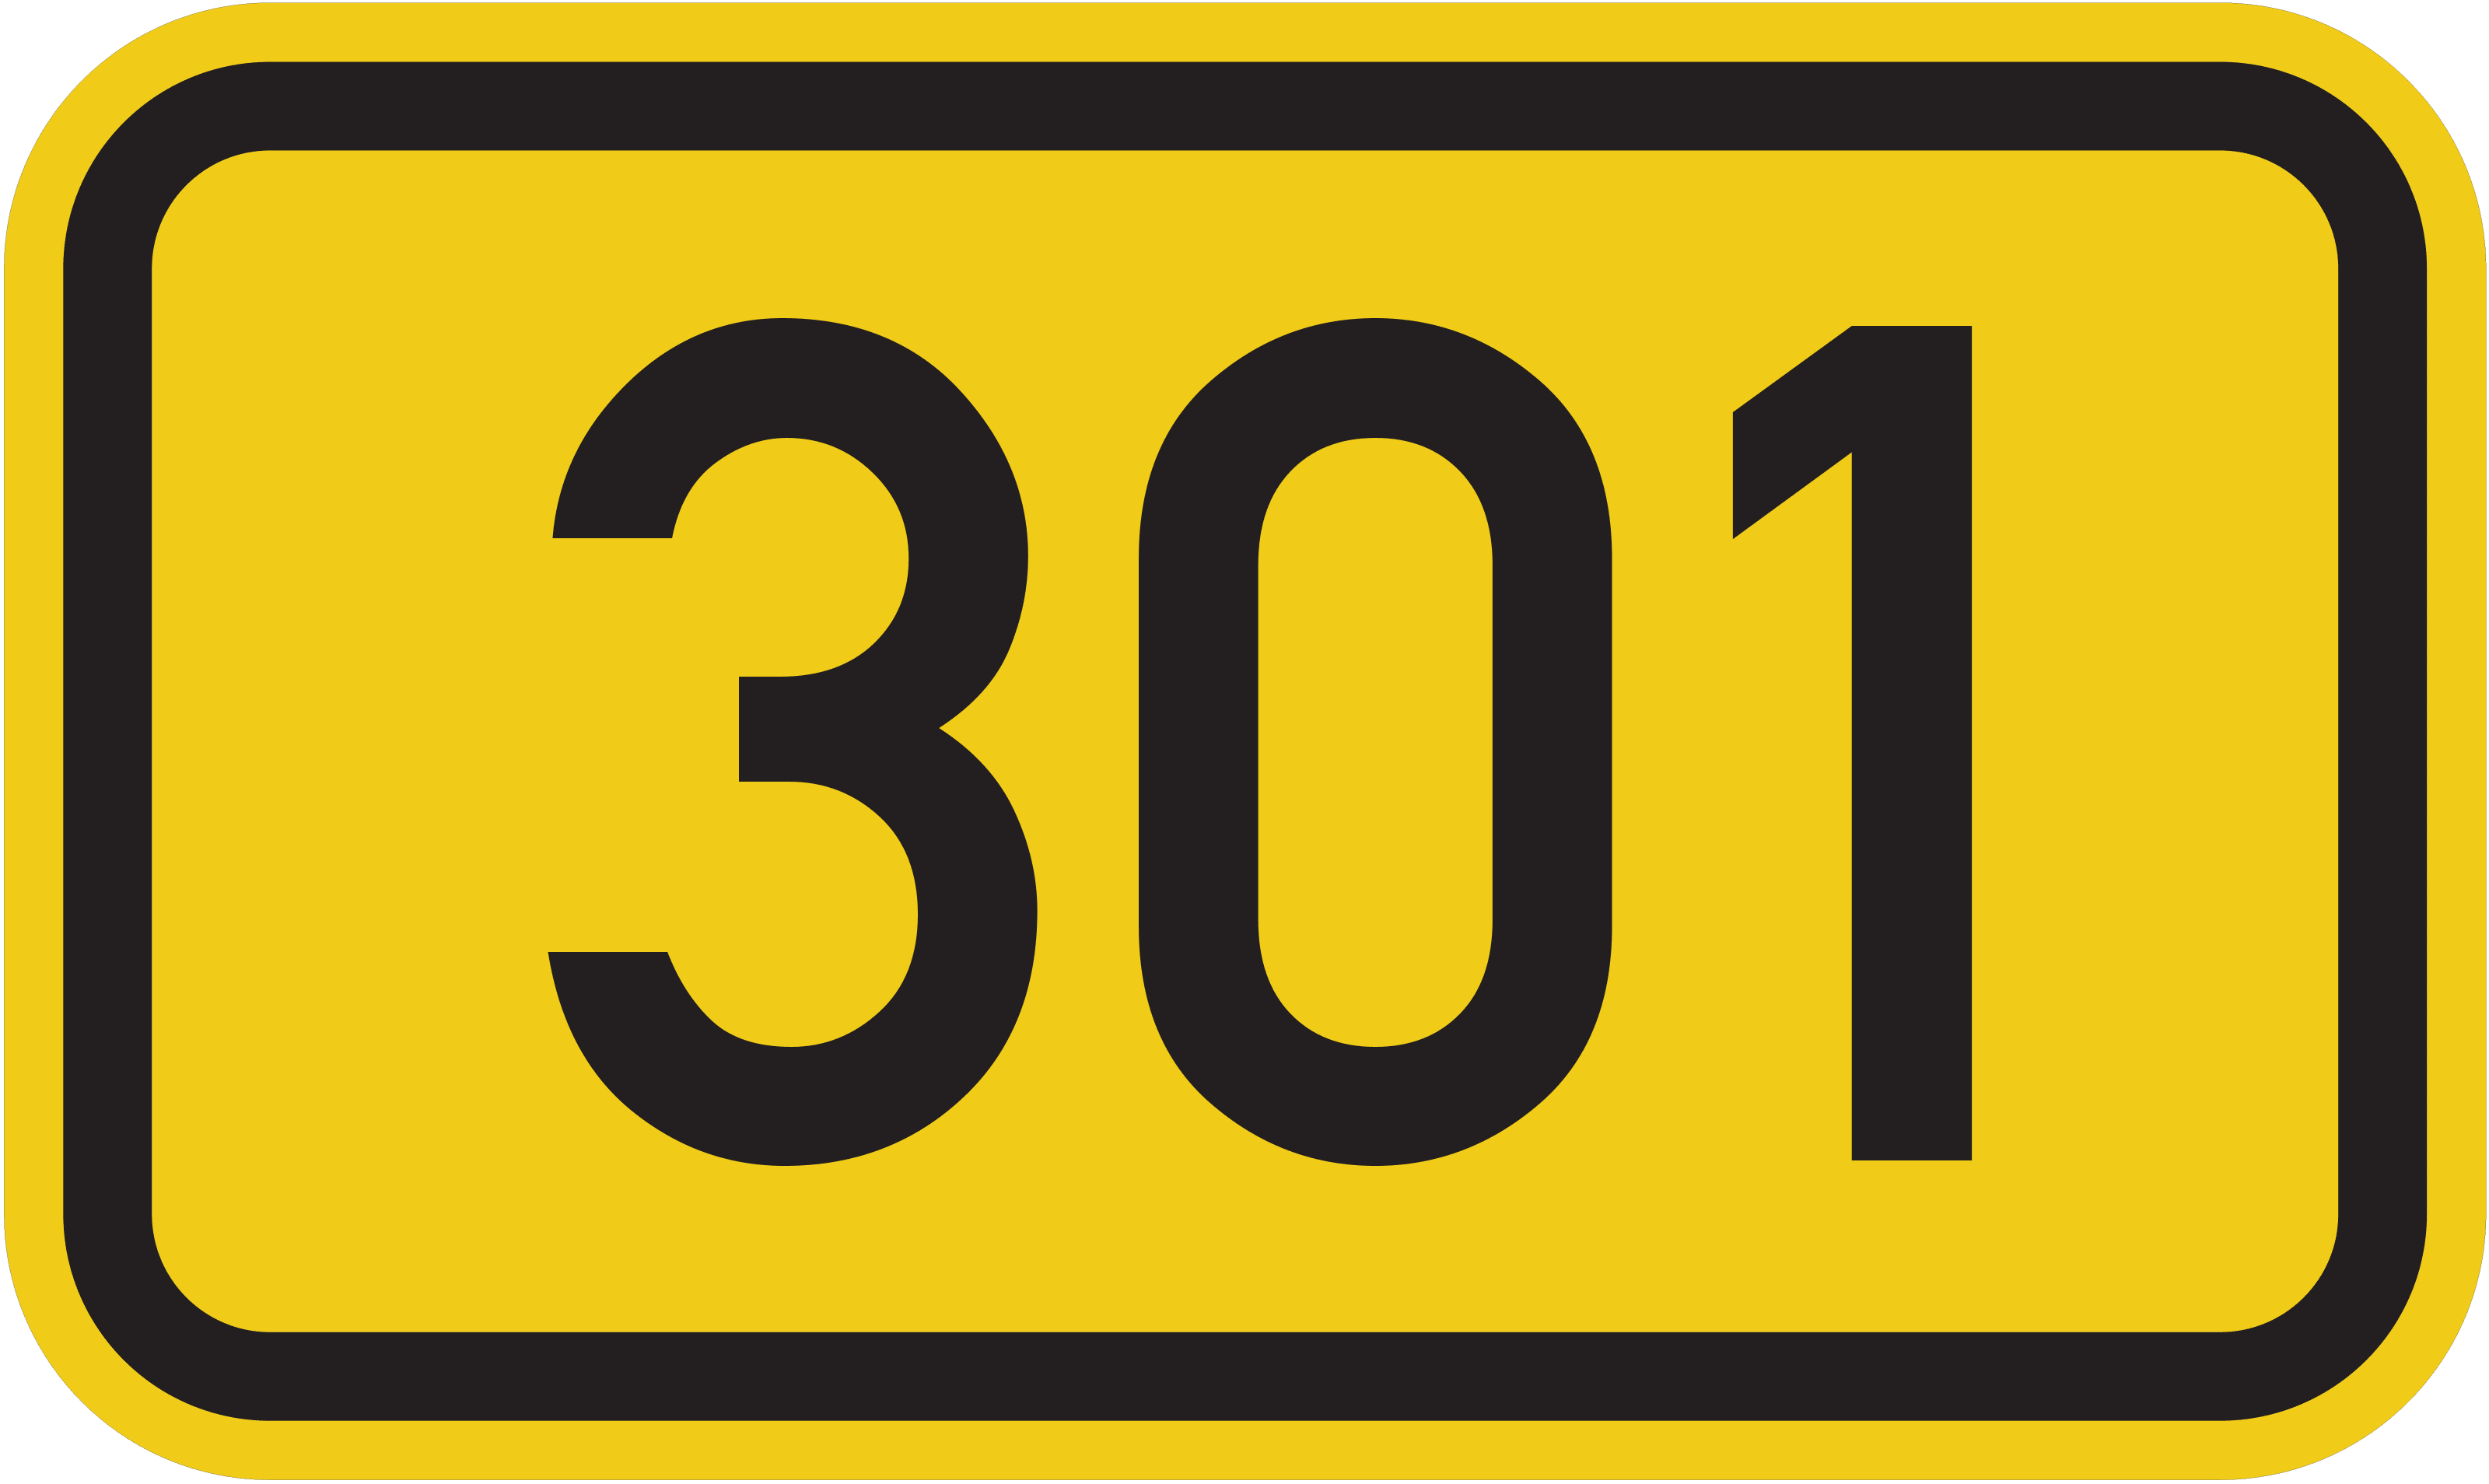 Bundesstraße 301